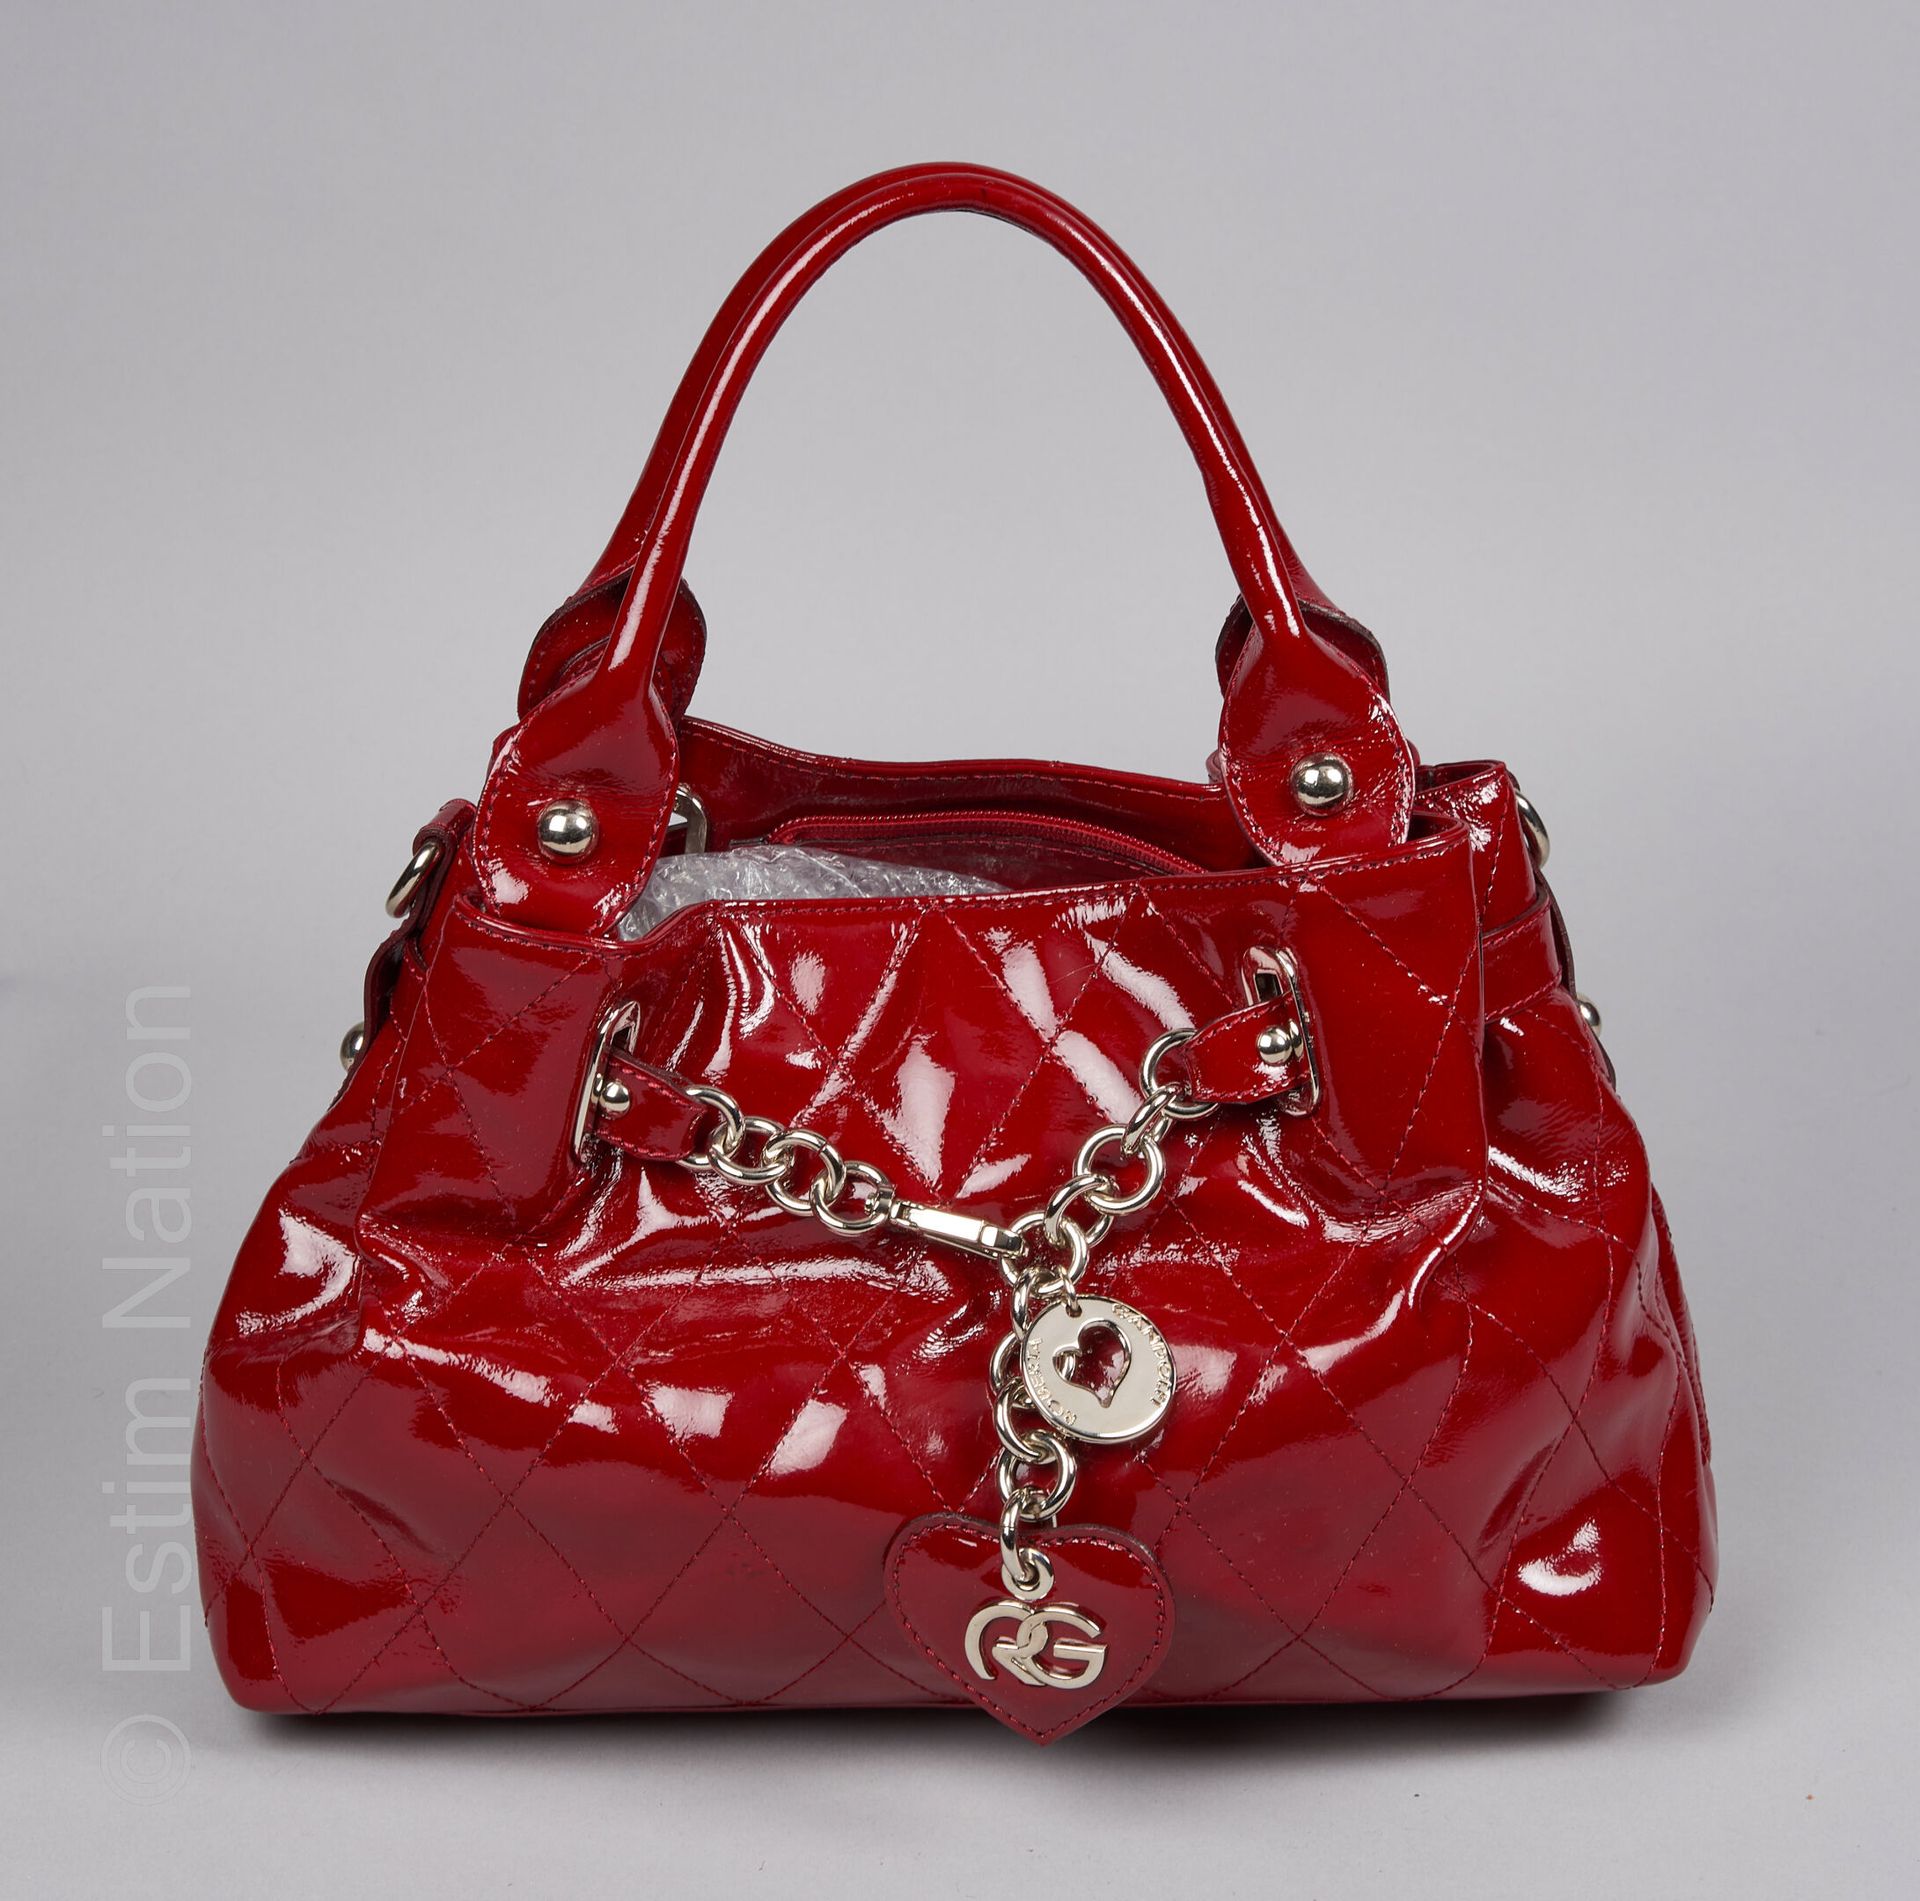 ROBERTA GANDOLFI SAC en simili cuir verni rouge, garniture chromée (20 x 33 x 12&hellip;